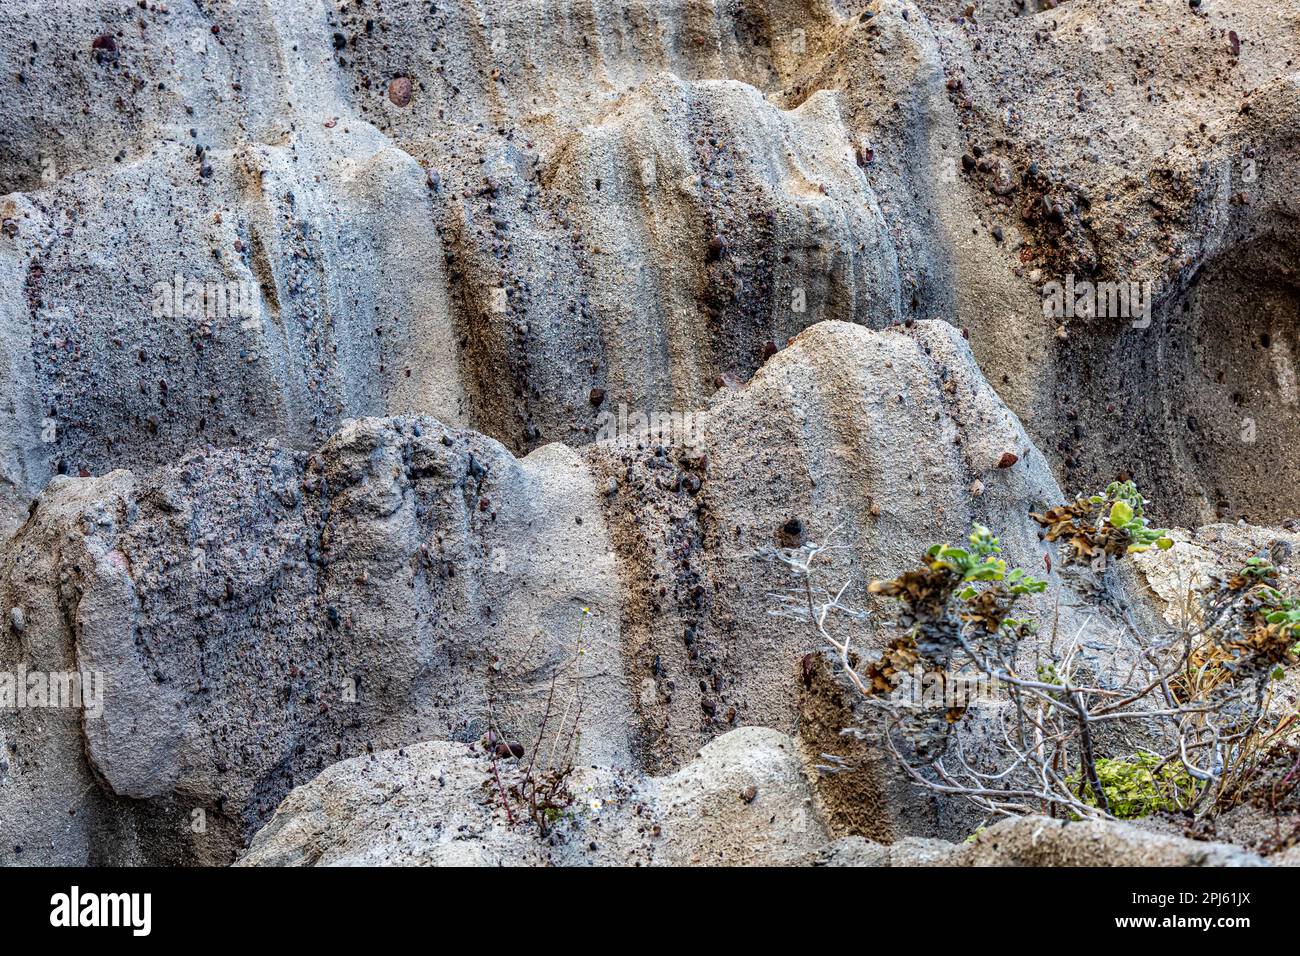 Primo piano della formazione di rocce sabbiose a Cerro de la Calavera, parete sul pendio di un massiccio roccioso con struttura irregolare ed erosioni causate dal passaggio di tim Foto Stock